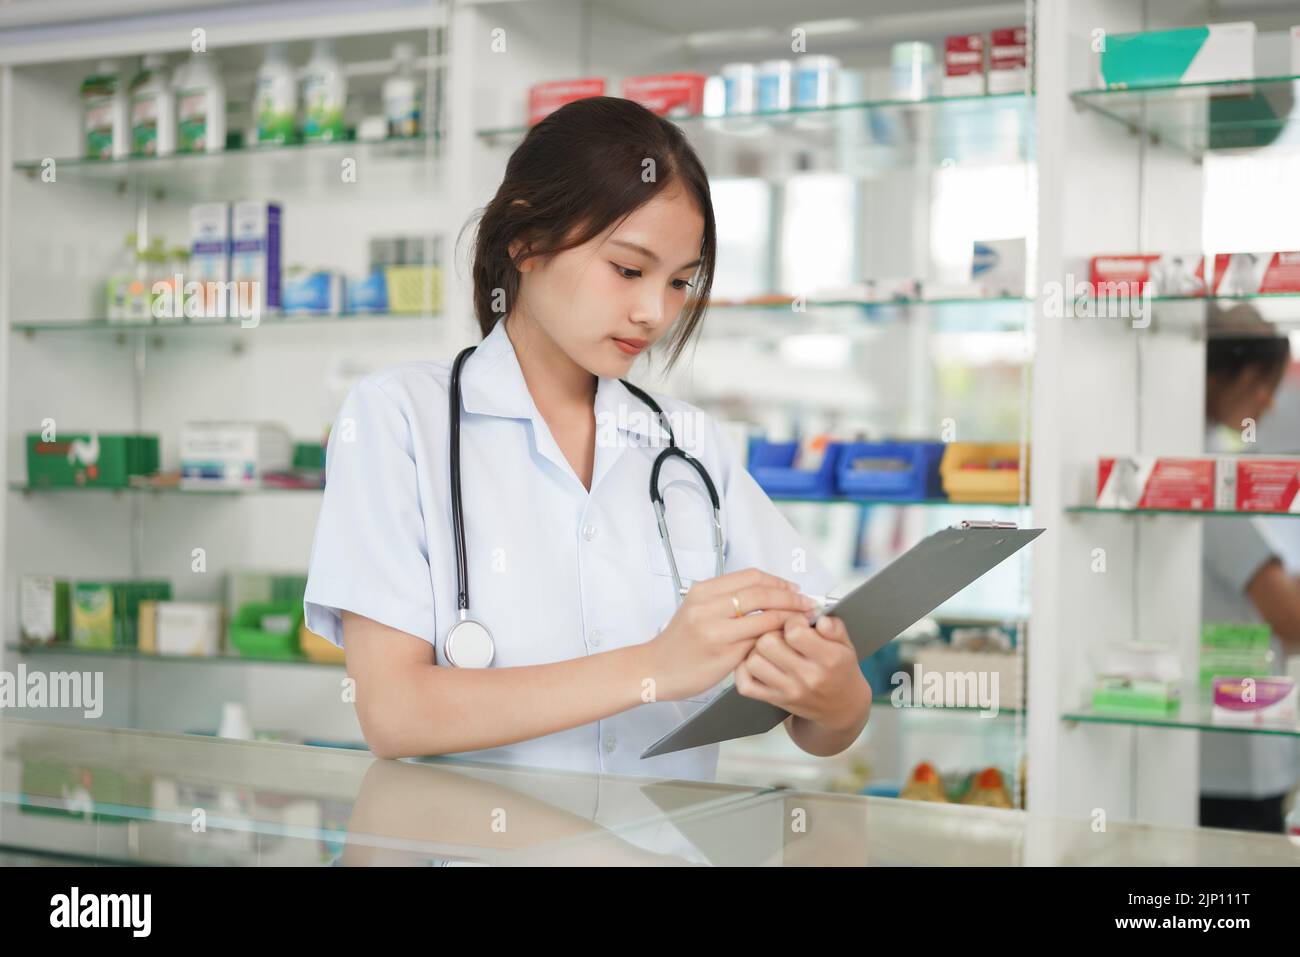 Medizin und Gesundheitskonzept, Apothekerin schreibt Rezept und medizinische Eigenschaften. Stockfoto